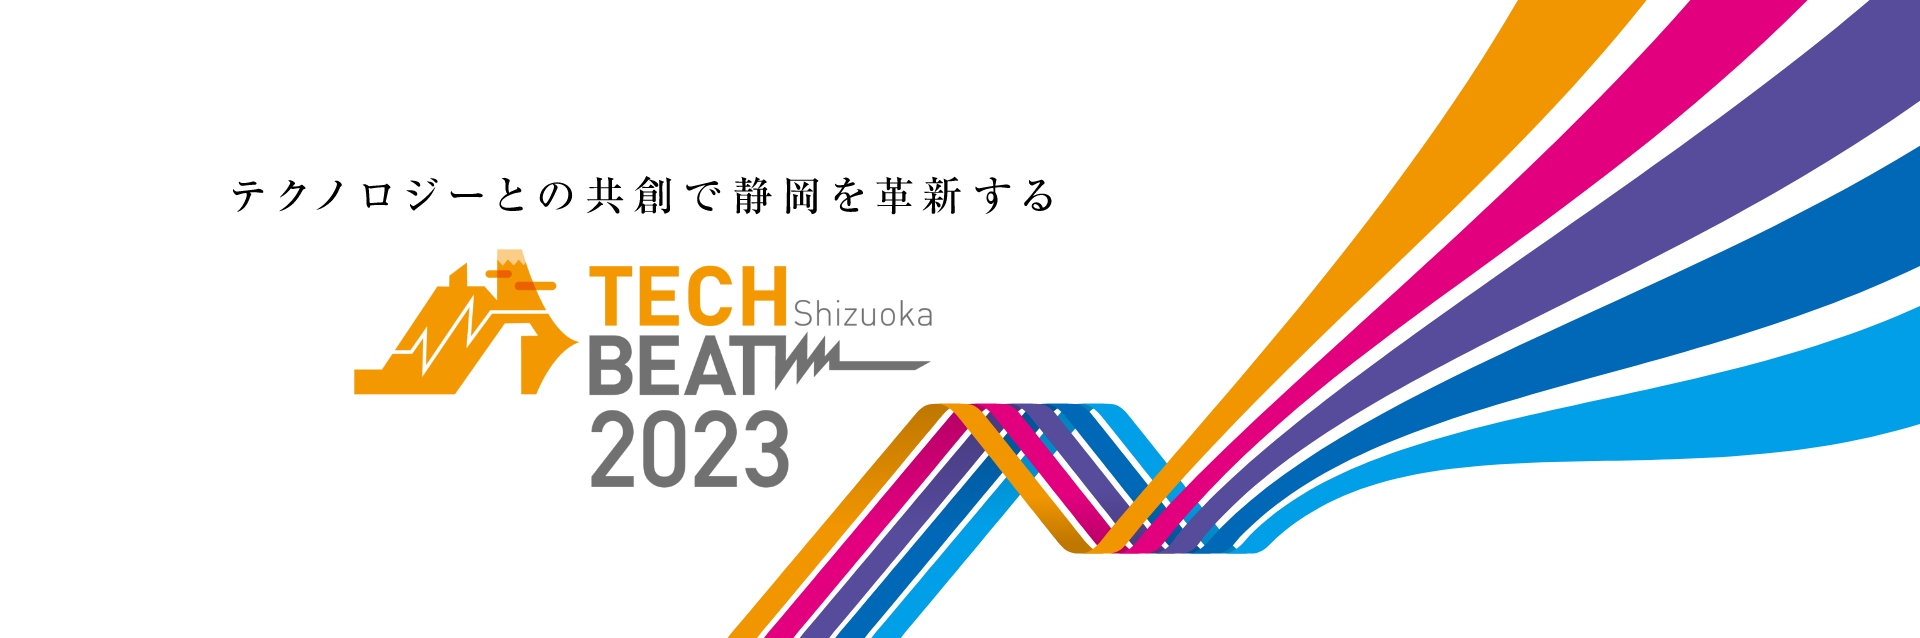 TECH BEAT Shizuoka 2023